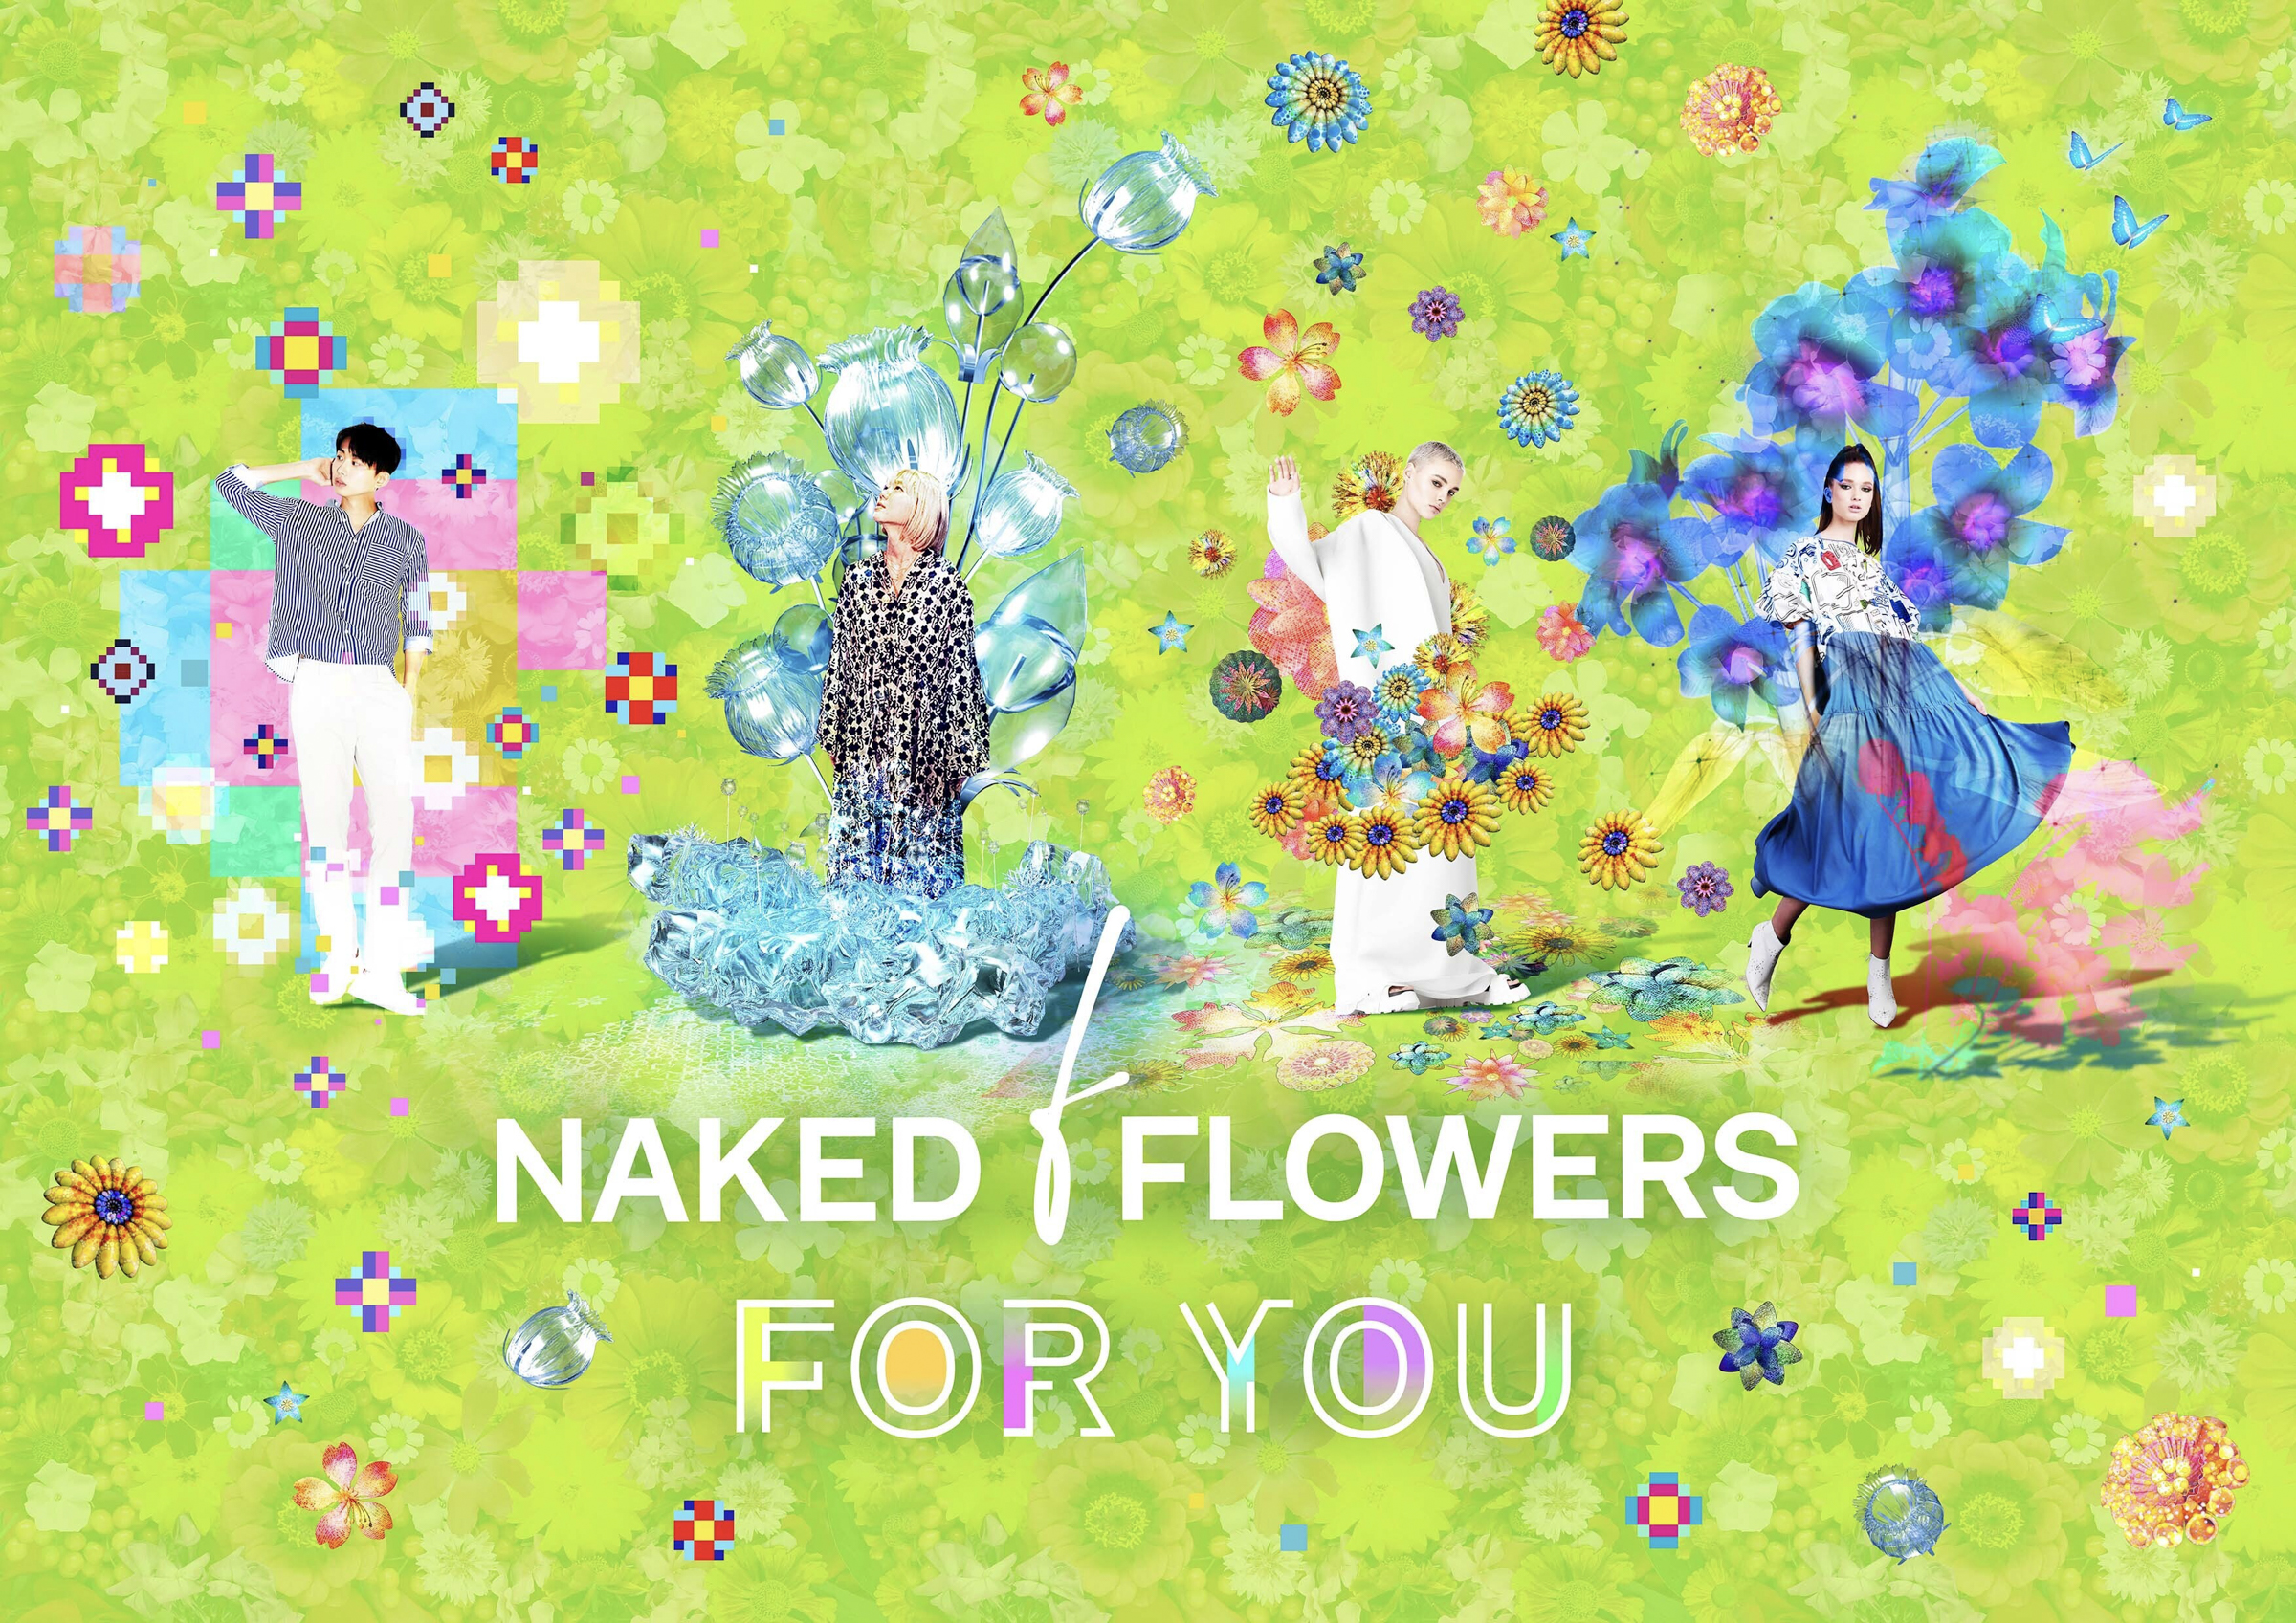 ネイキッドの体験型アート展「NAKED FLOWERS」が常設施設に、4つのガーデンとカフェを設置